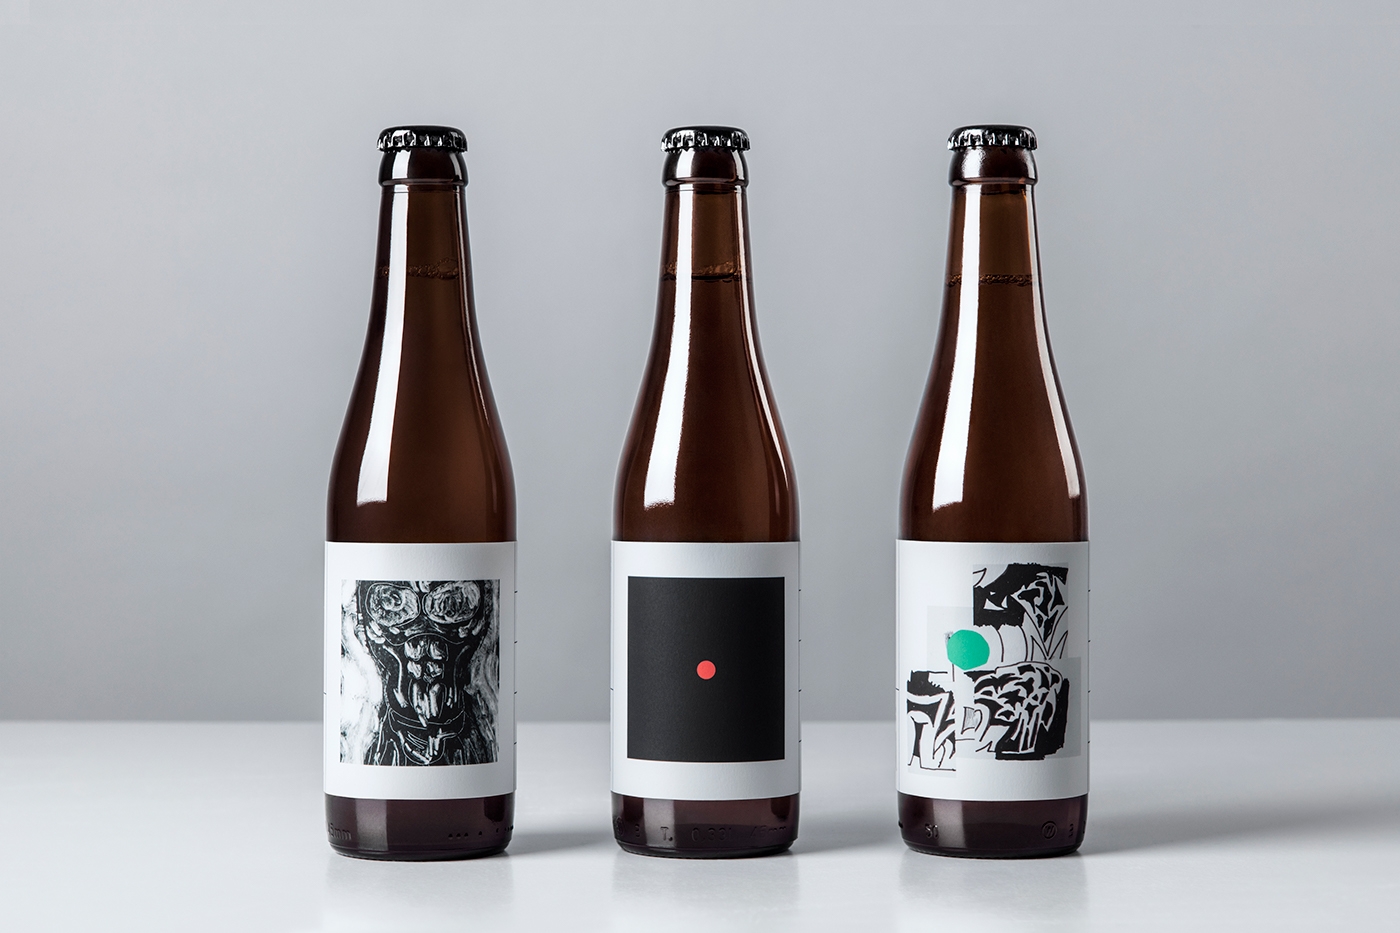 O / O酿造公司三款新啤酒品牌包装设计